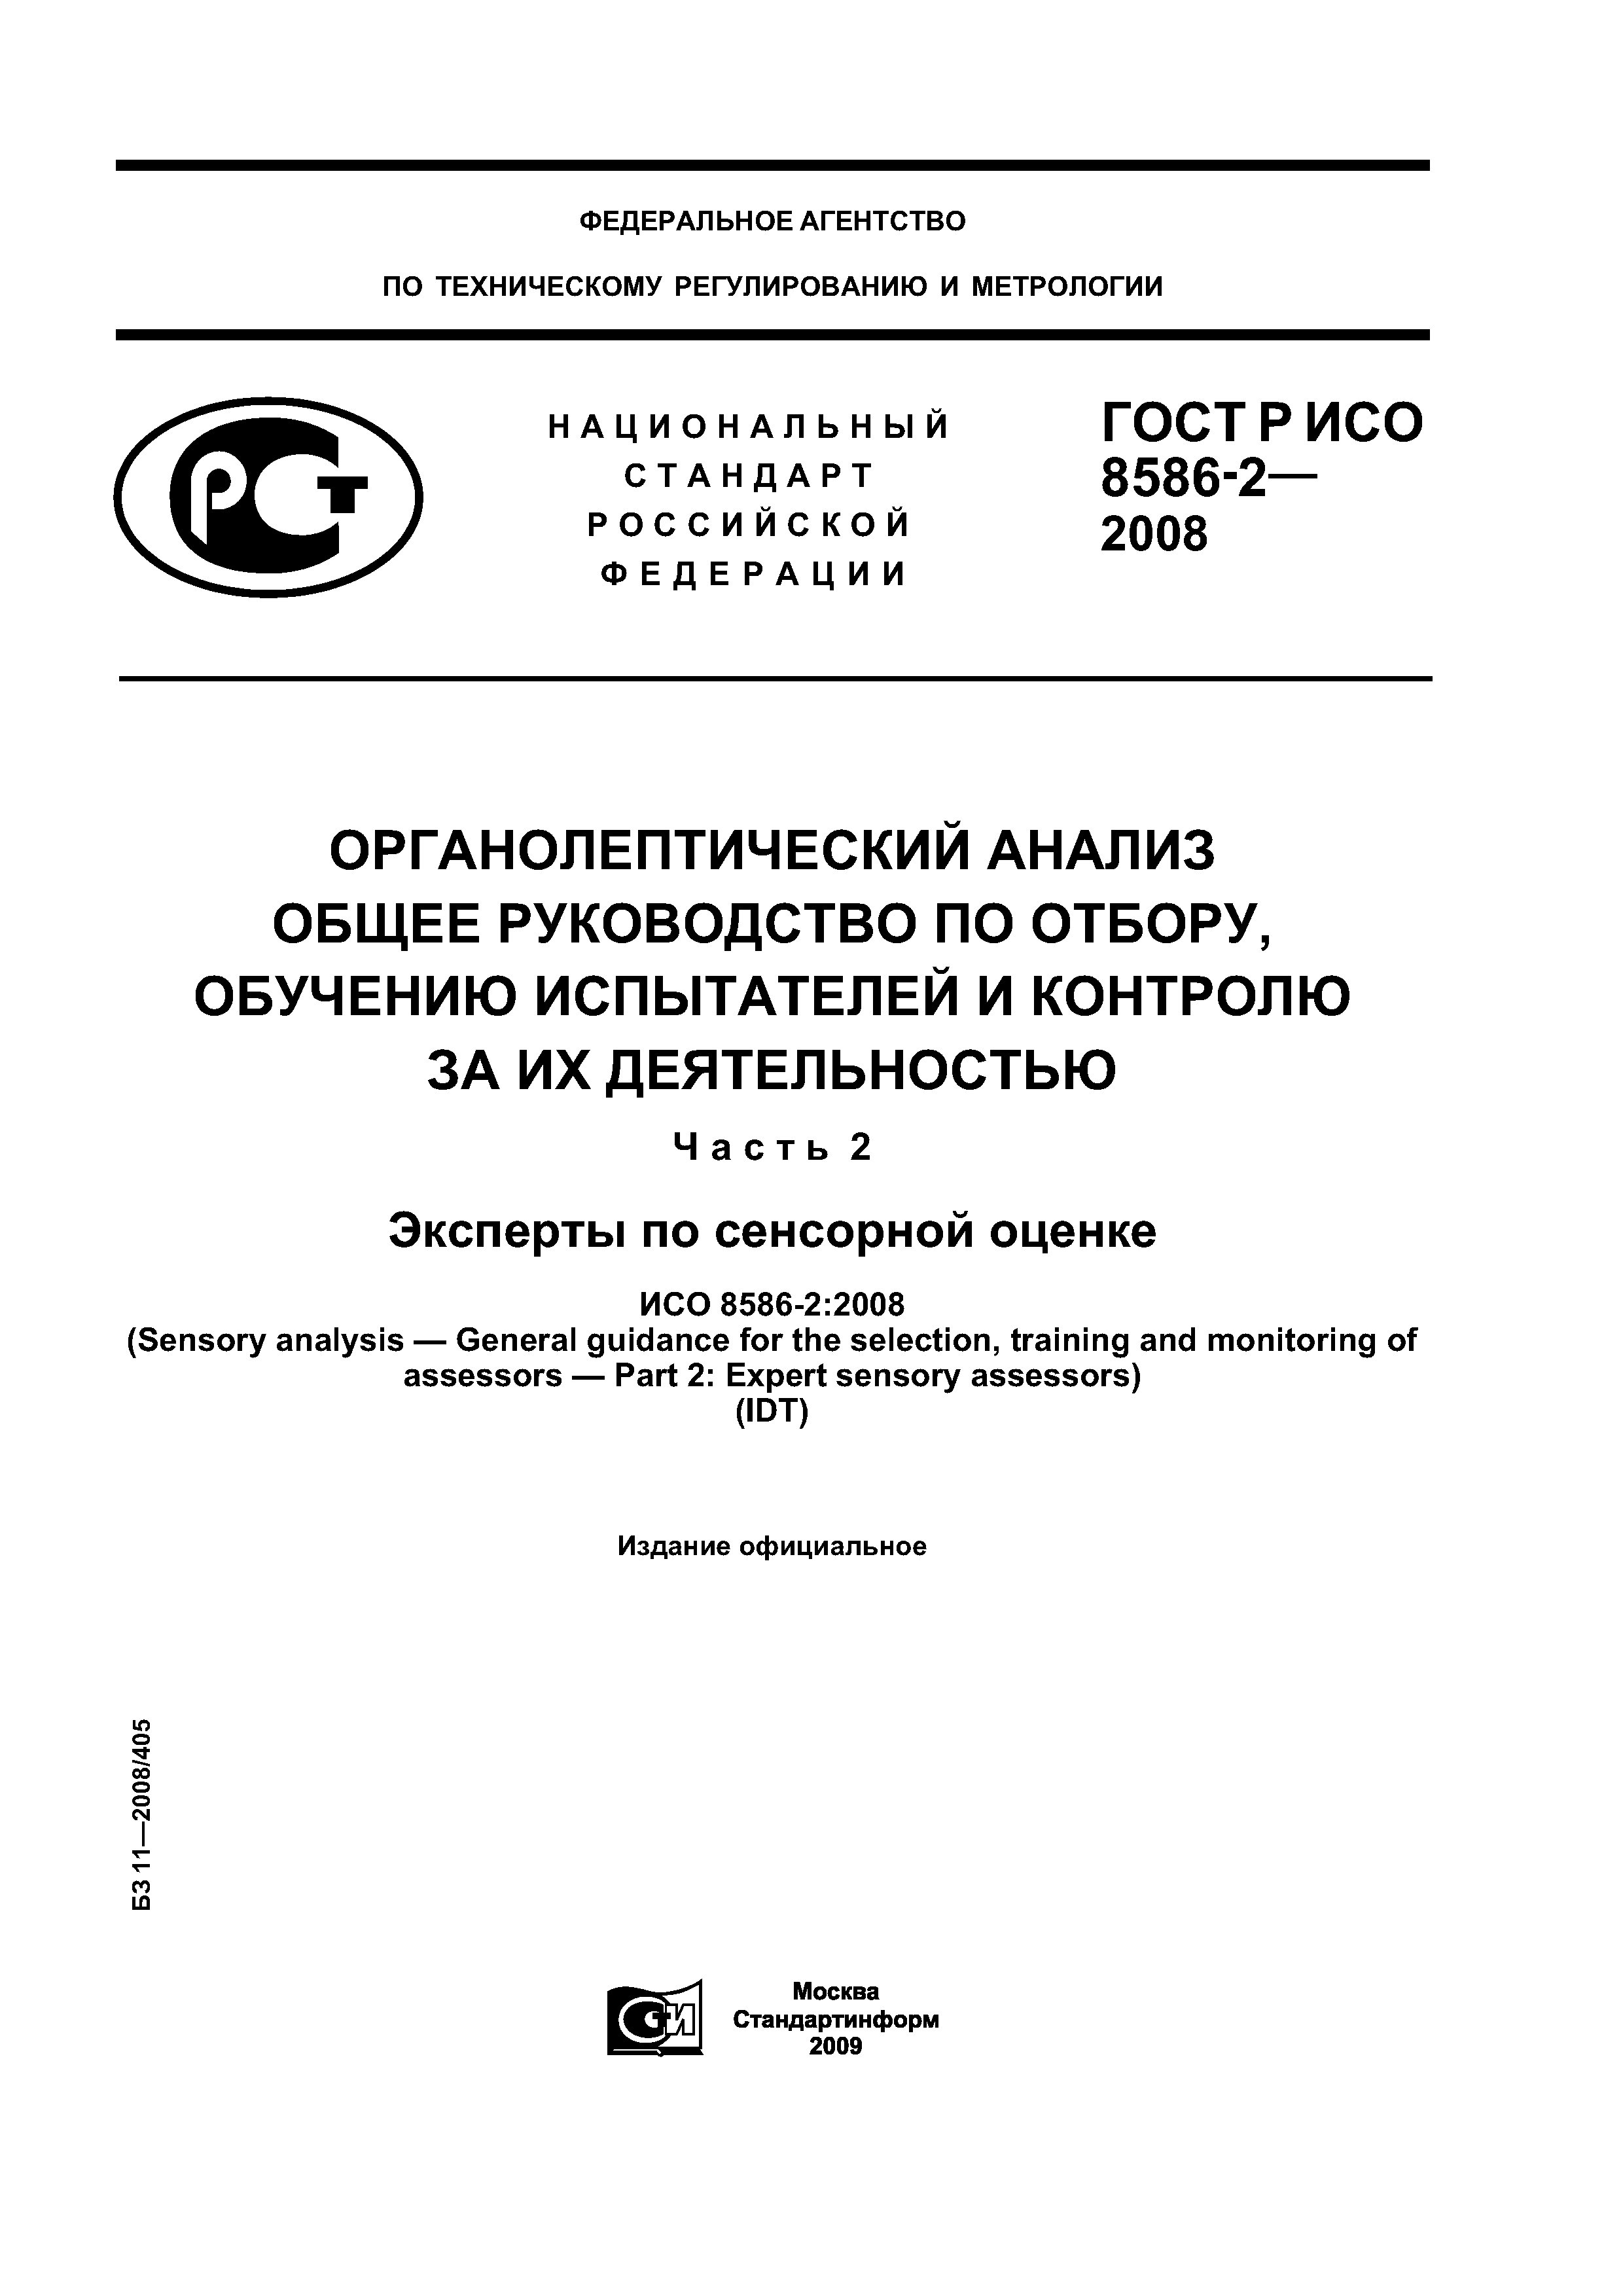 ГОСТ Р ИСО 8586-2-2008